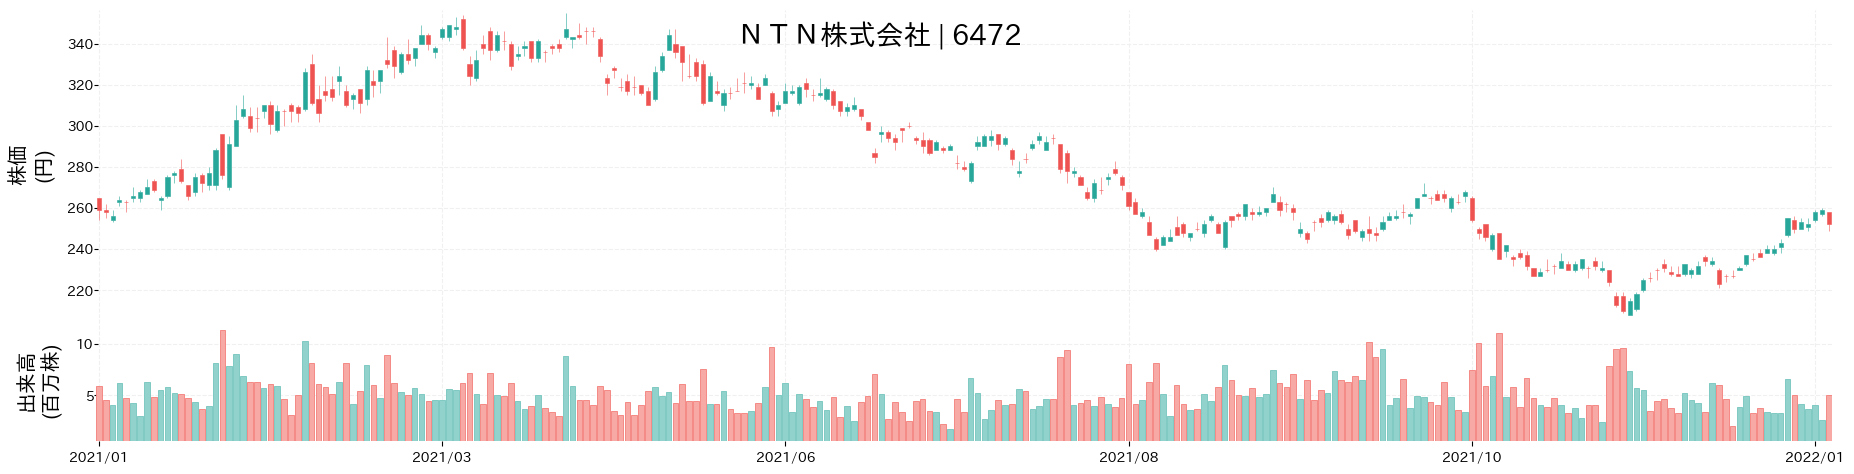 NTNの株価推移(2021)